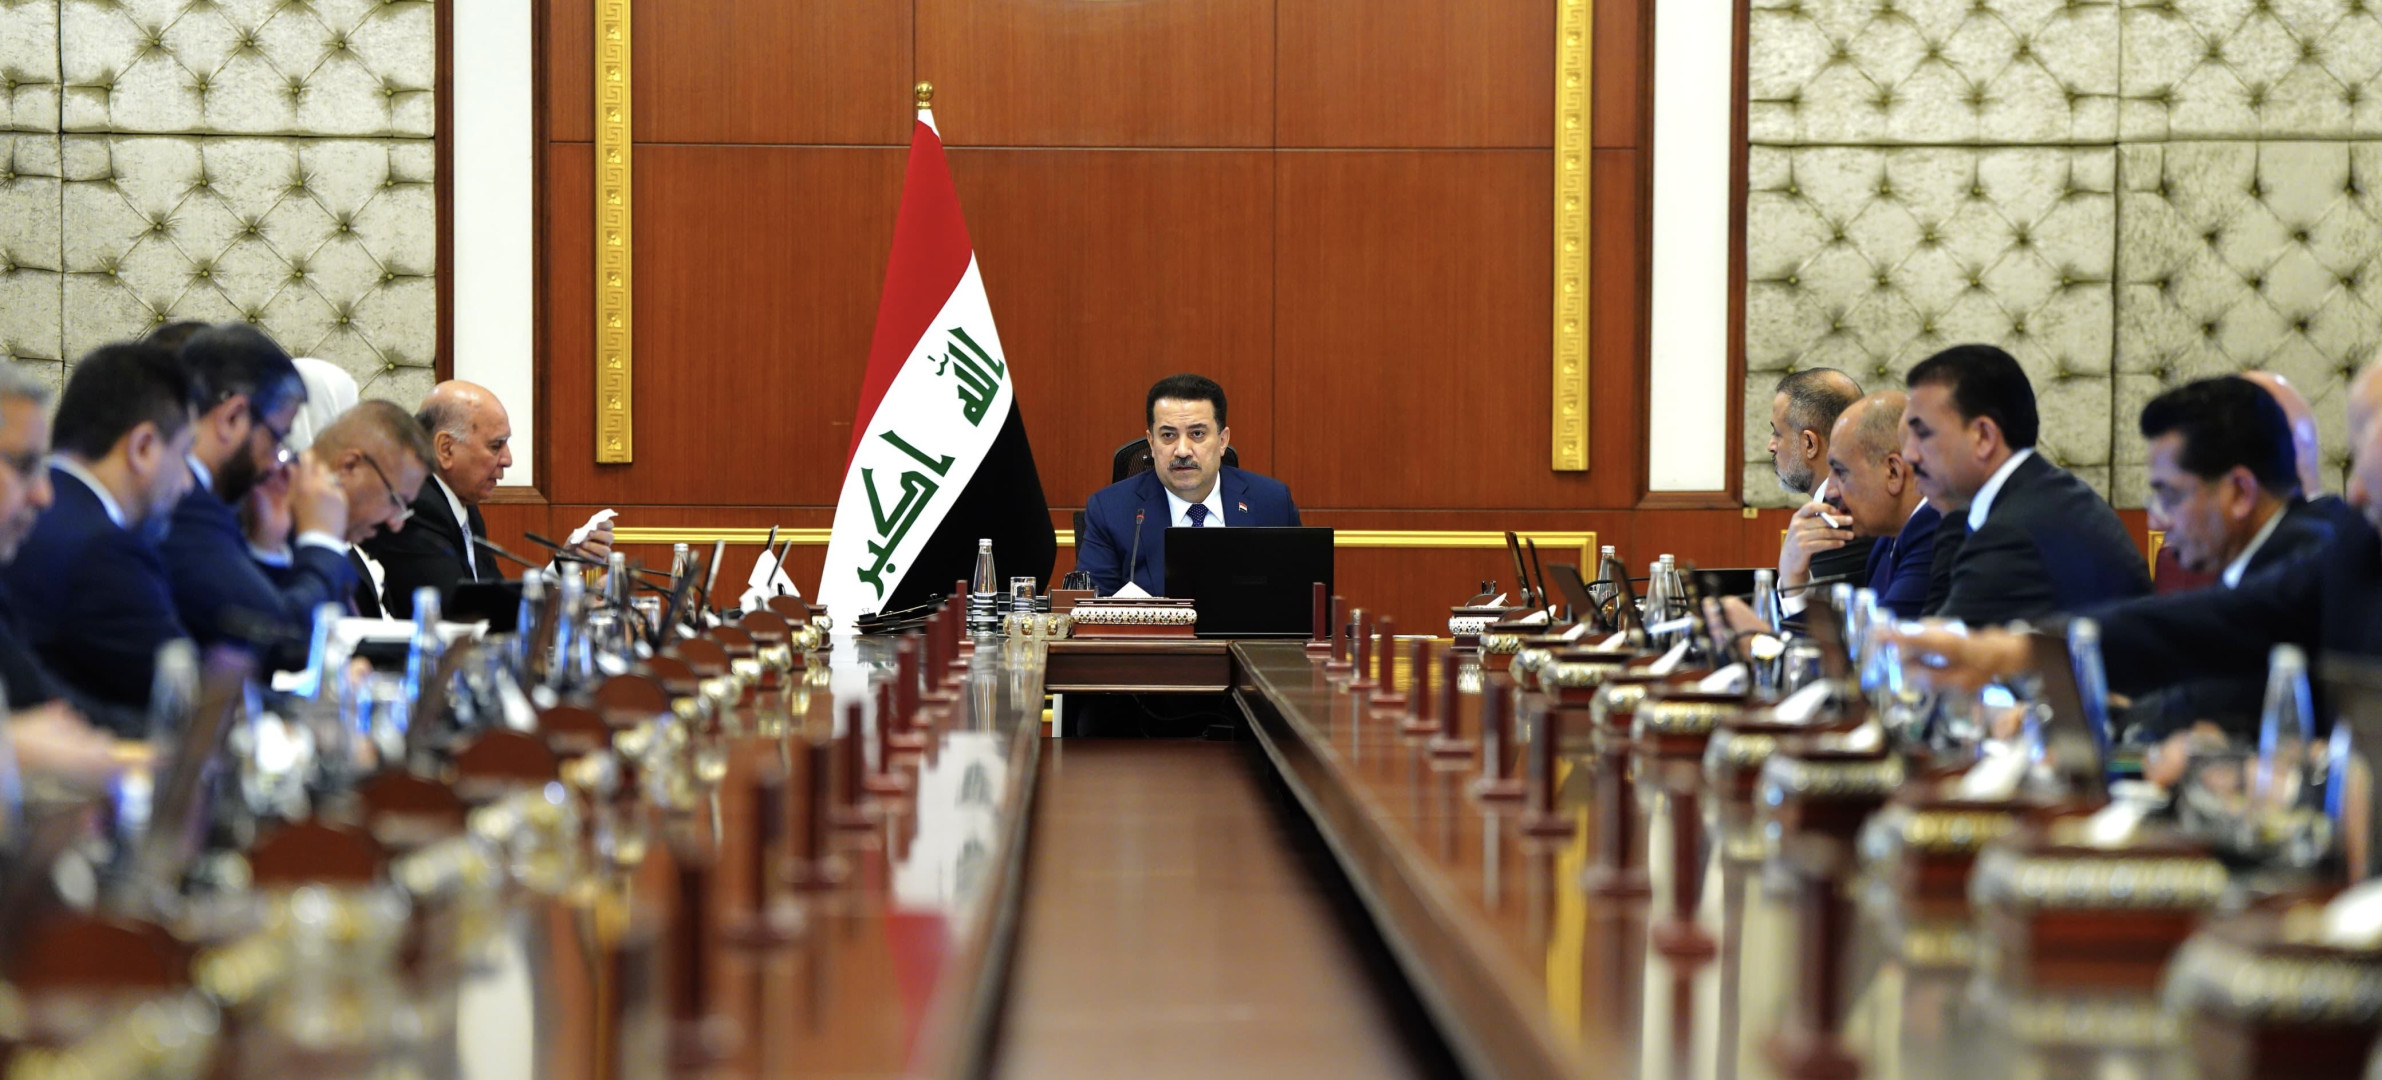 مجلس الوزراء العراقي يقرّ حزمة من القرارات ويرفع تكاليف إنشاء مشاريع خدمية